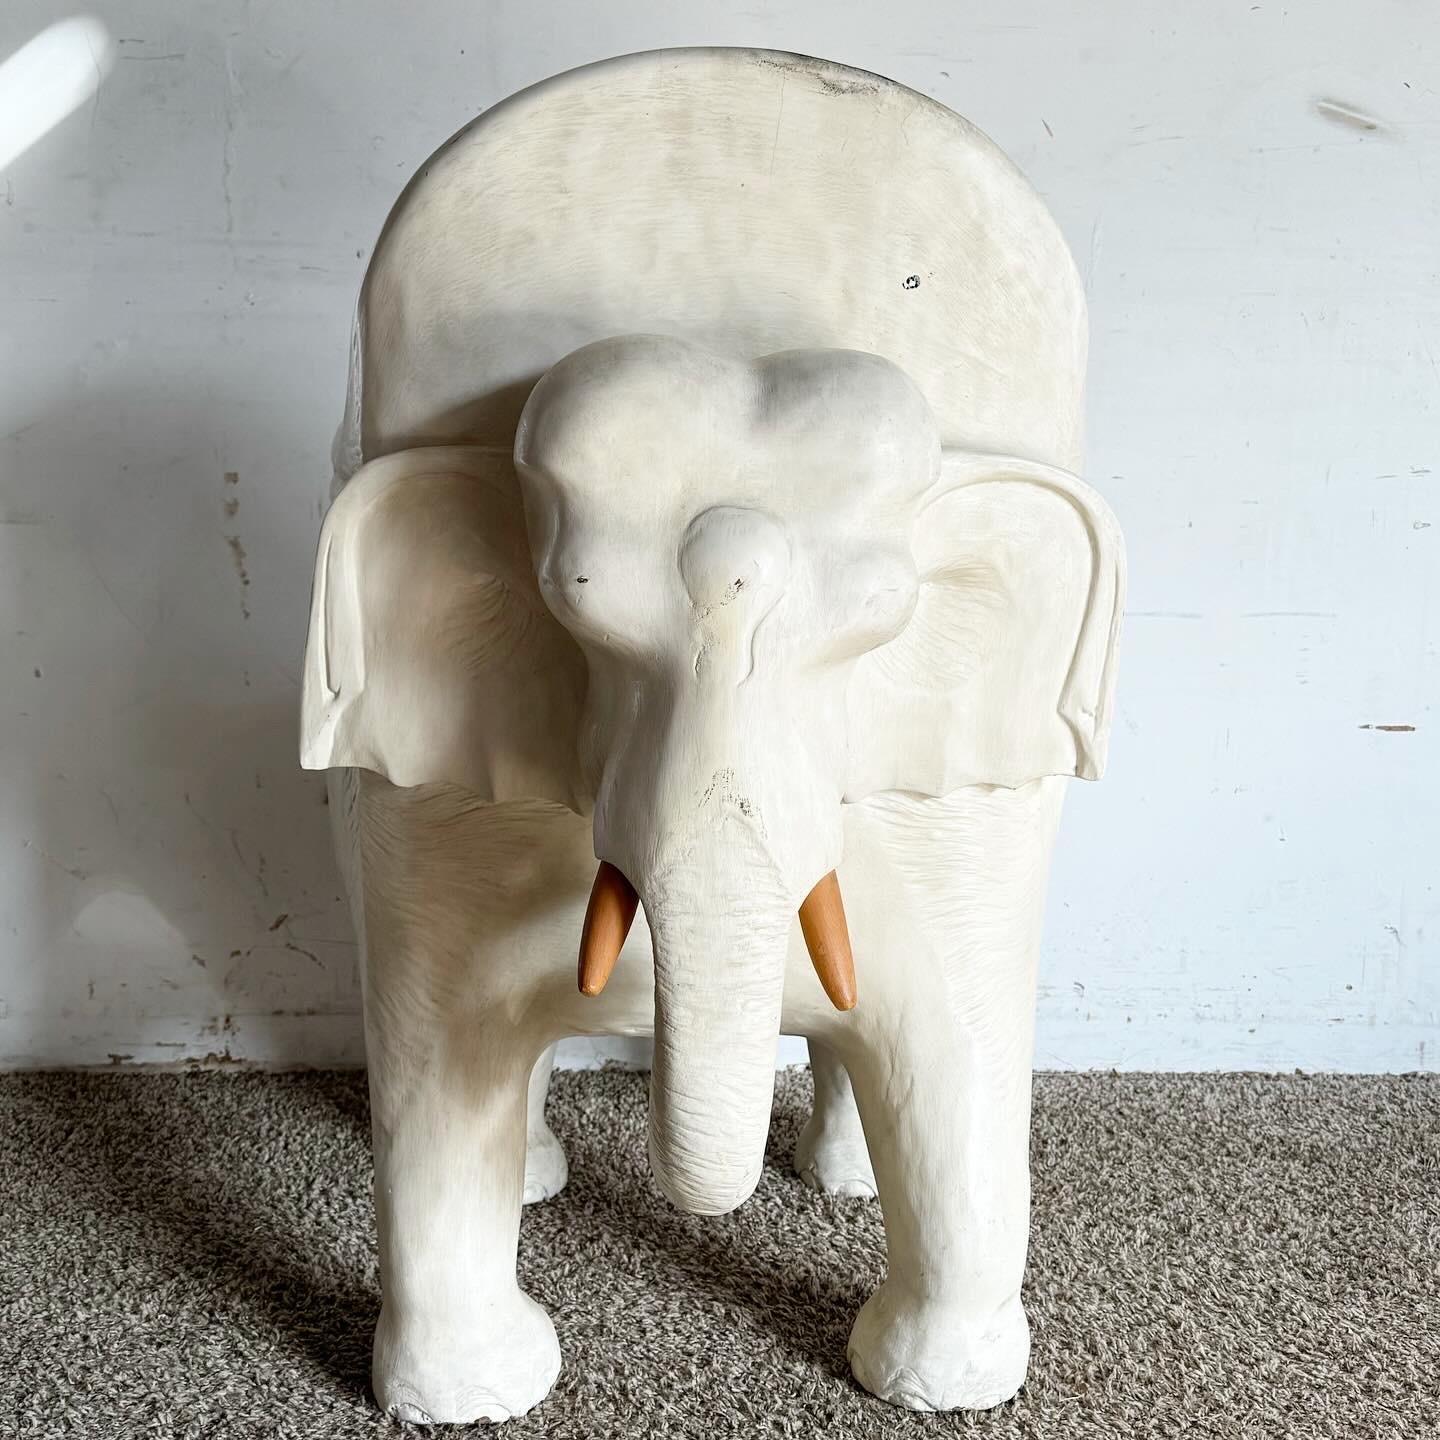 Bringen Sie einen Hauch von Laune und Kunstfertigkeit in Ihren Raum mit diesem handgeschnitzten Elefanten-Akzentstuhl aus Holz, der weiß lackiert ist. Mit seinen aufwändigen Schnitzereien zeigt dieser Stuhl außergewöhnliche Handwerkskunst mit einem